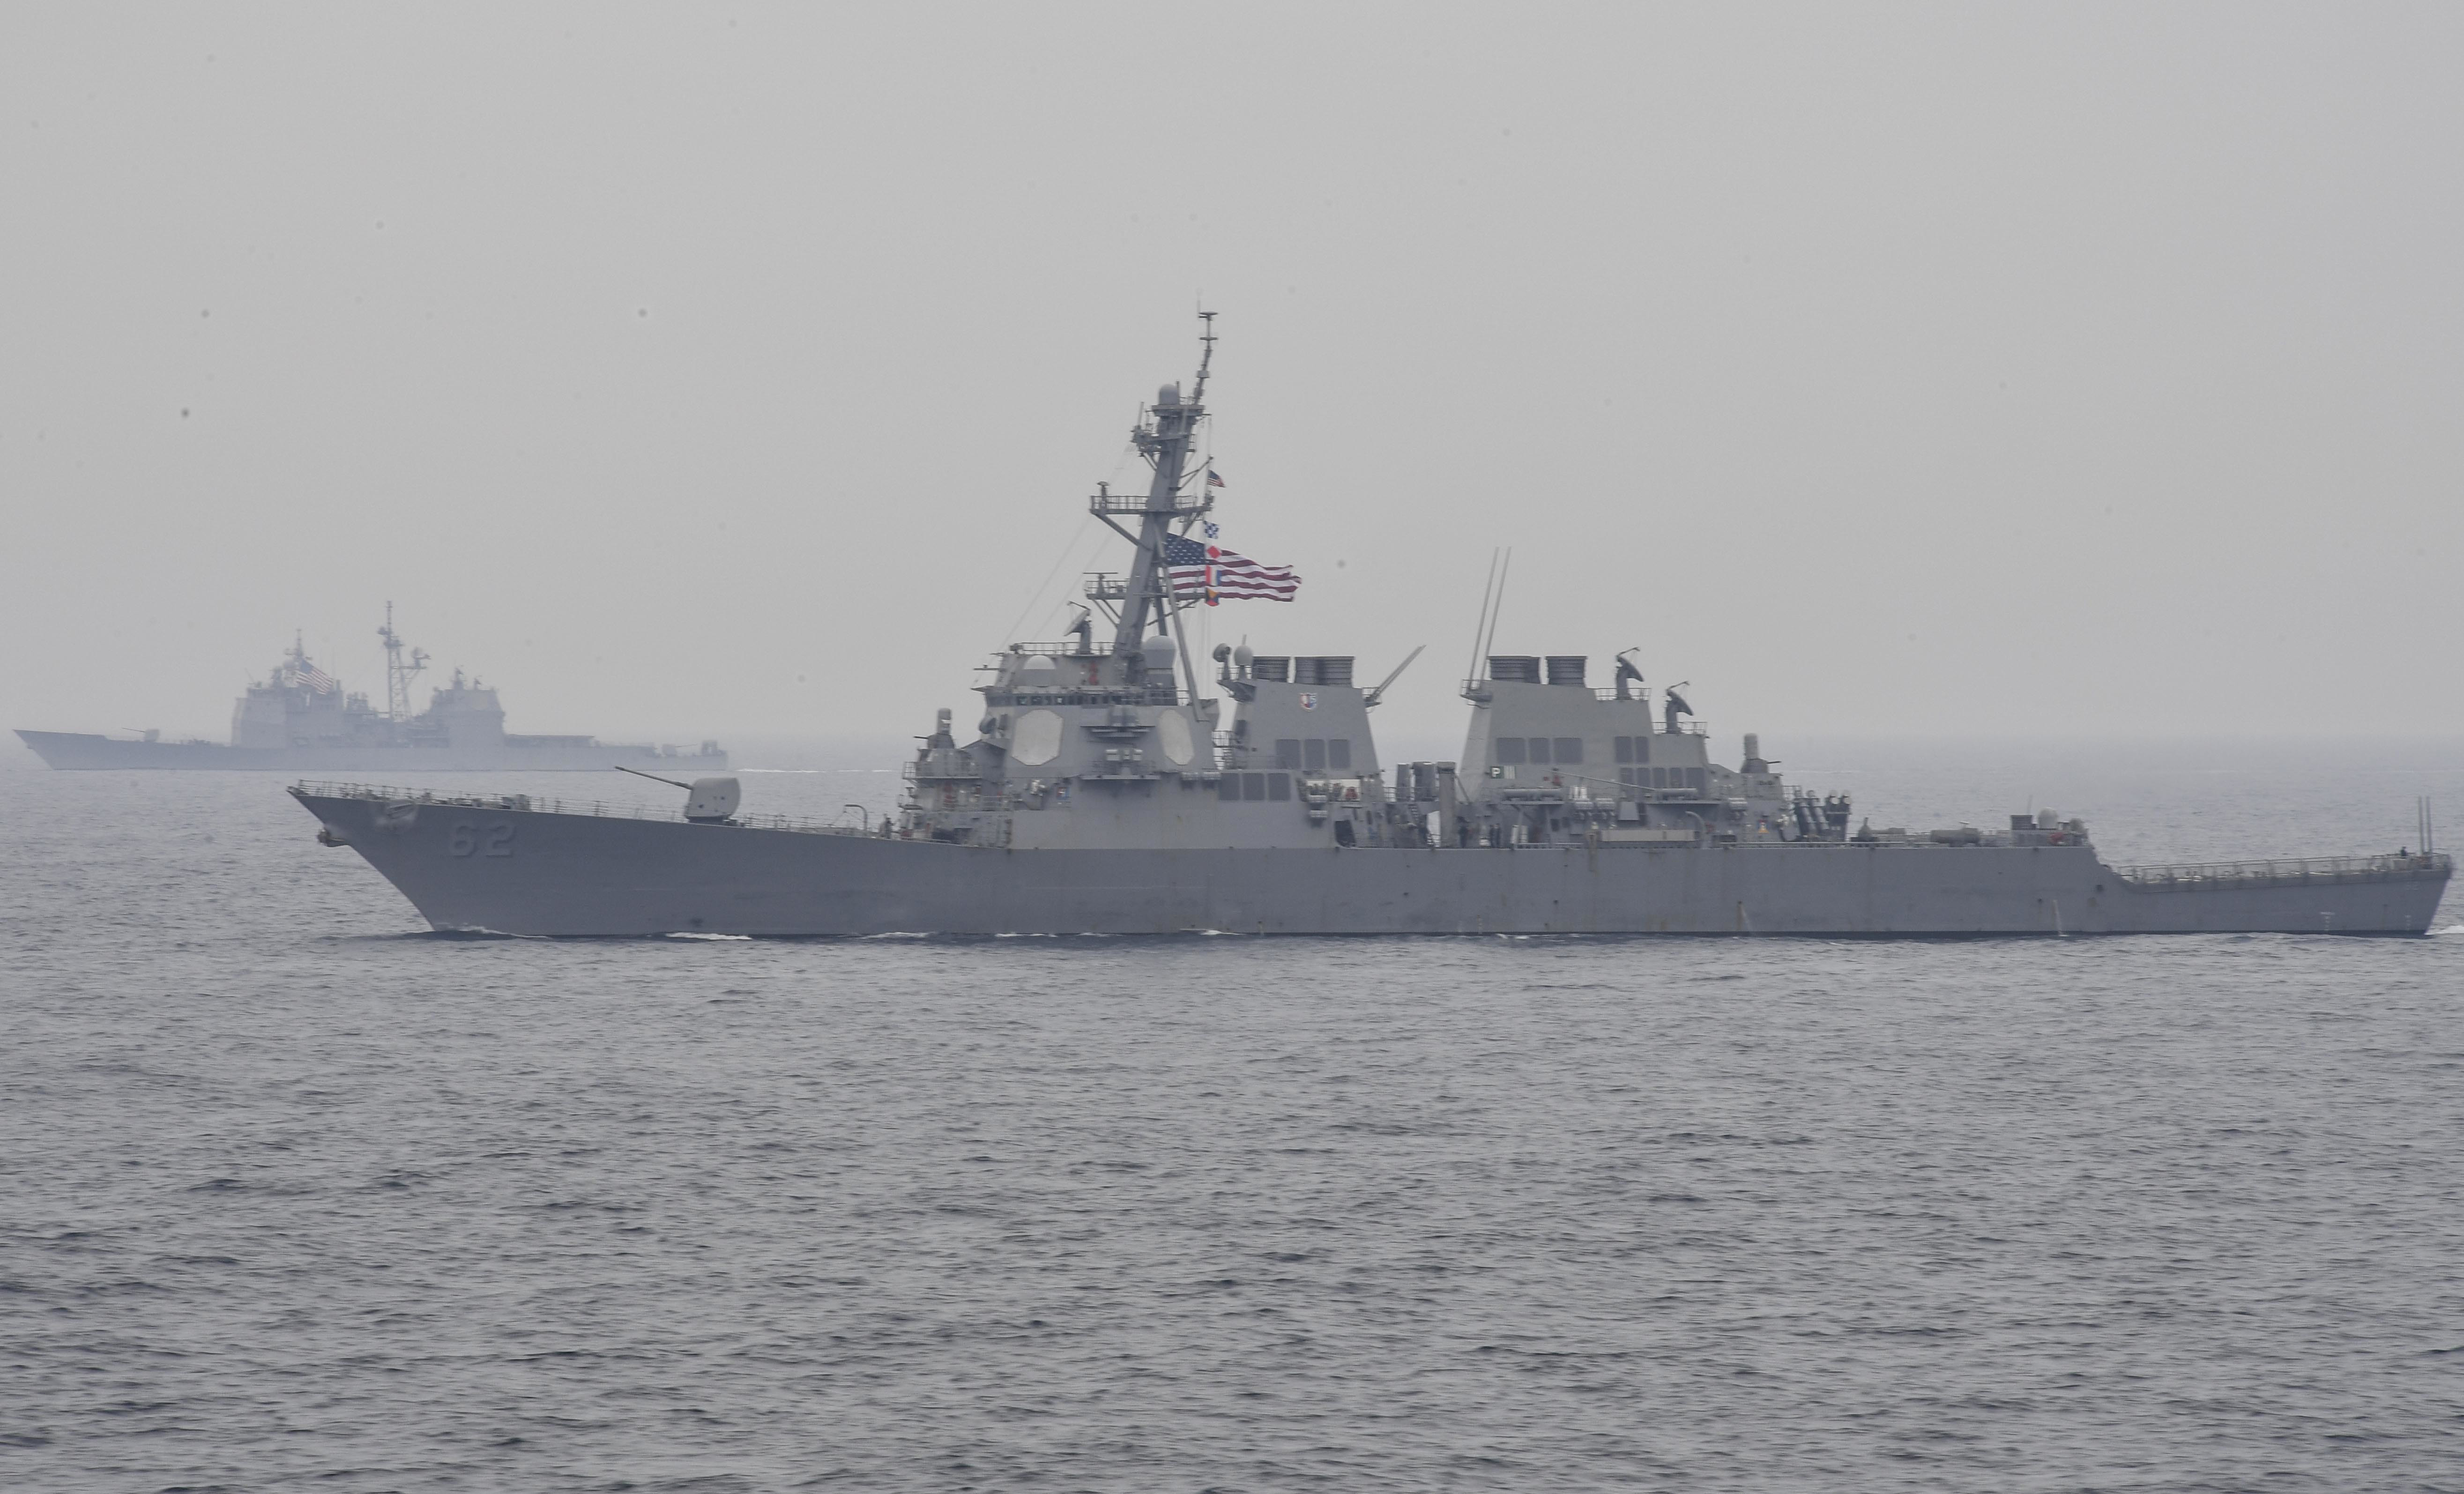 Семь членов экипажа американского корабля пропали без вести undefined